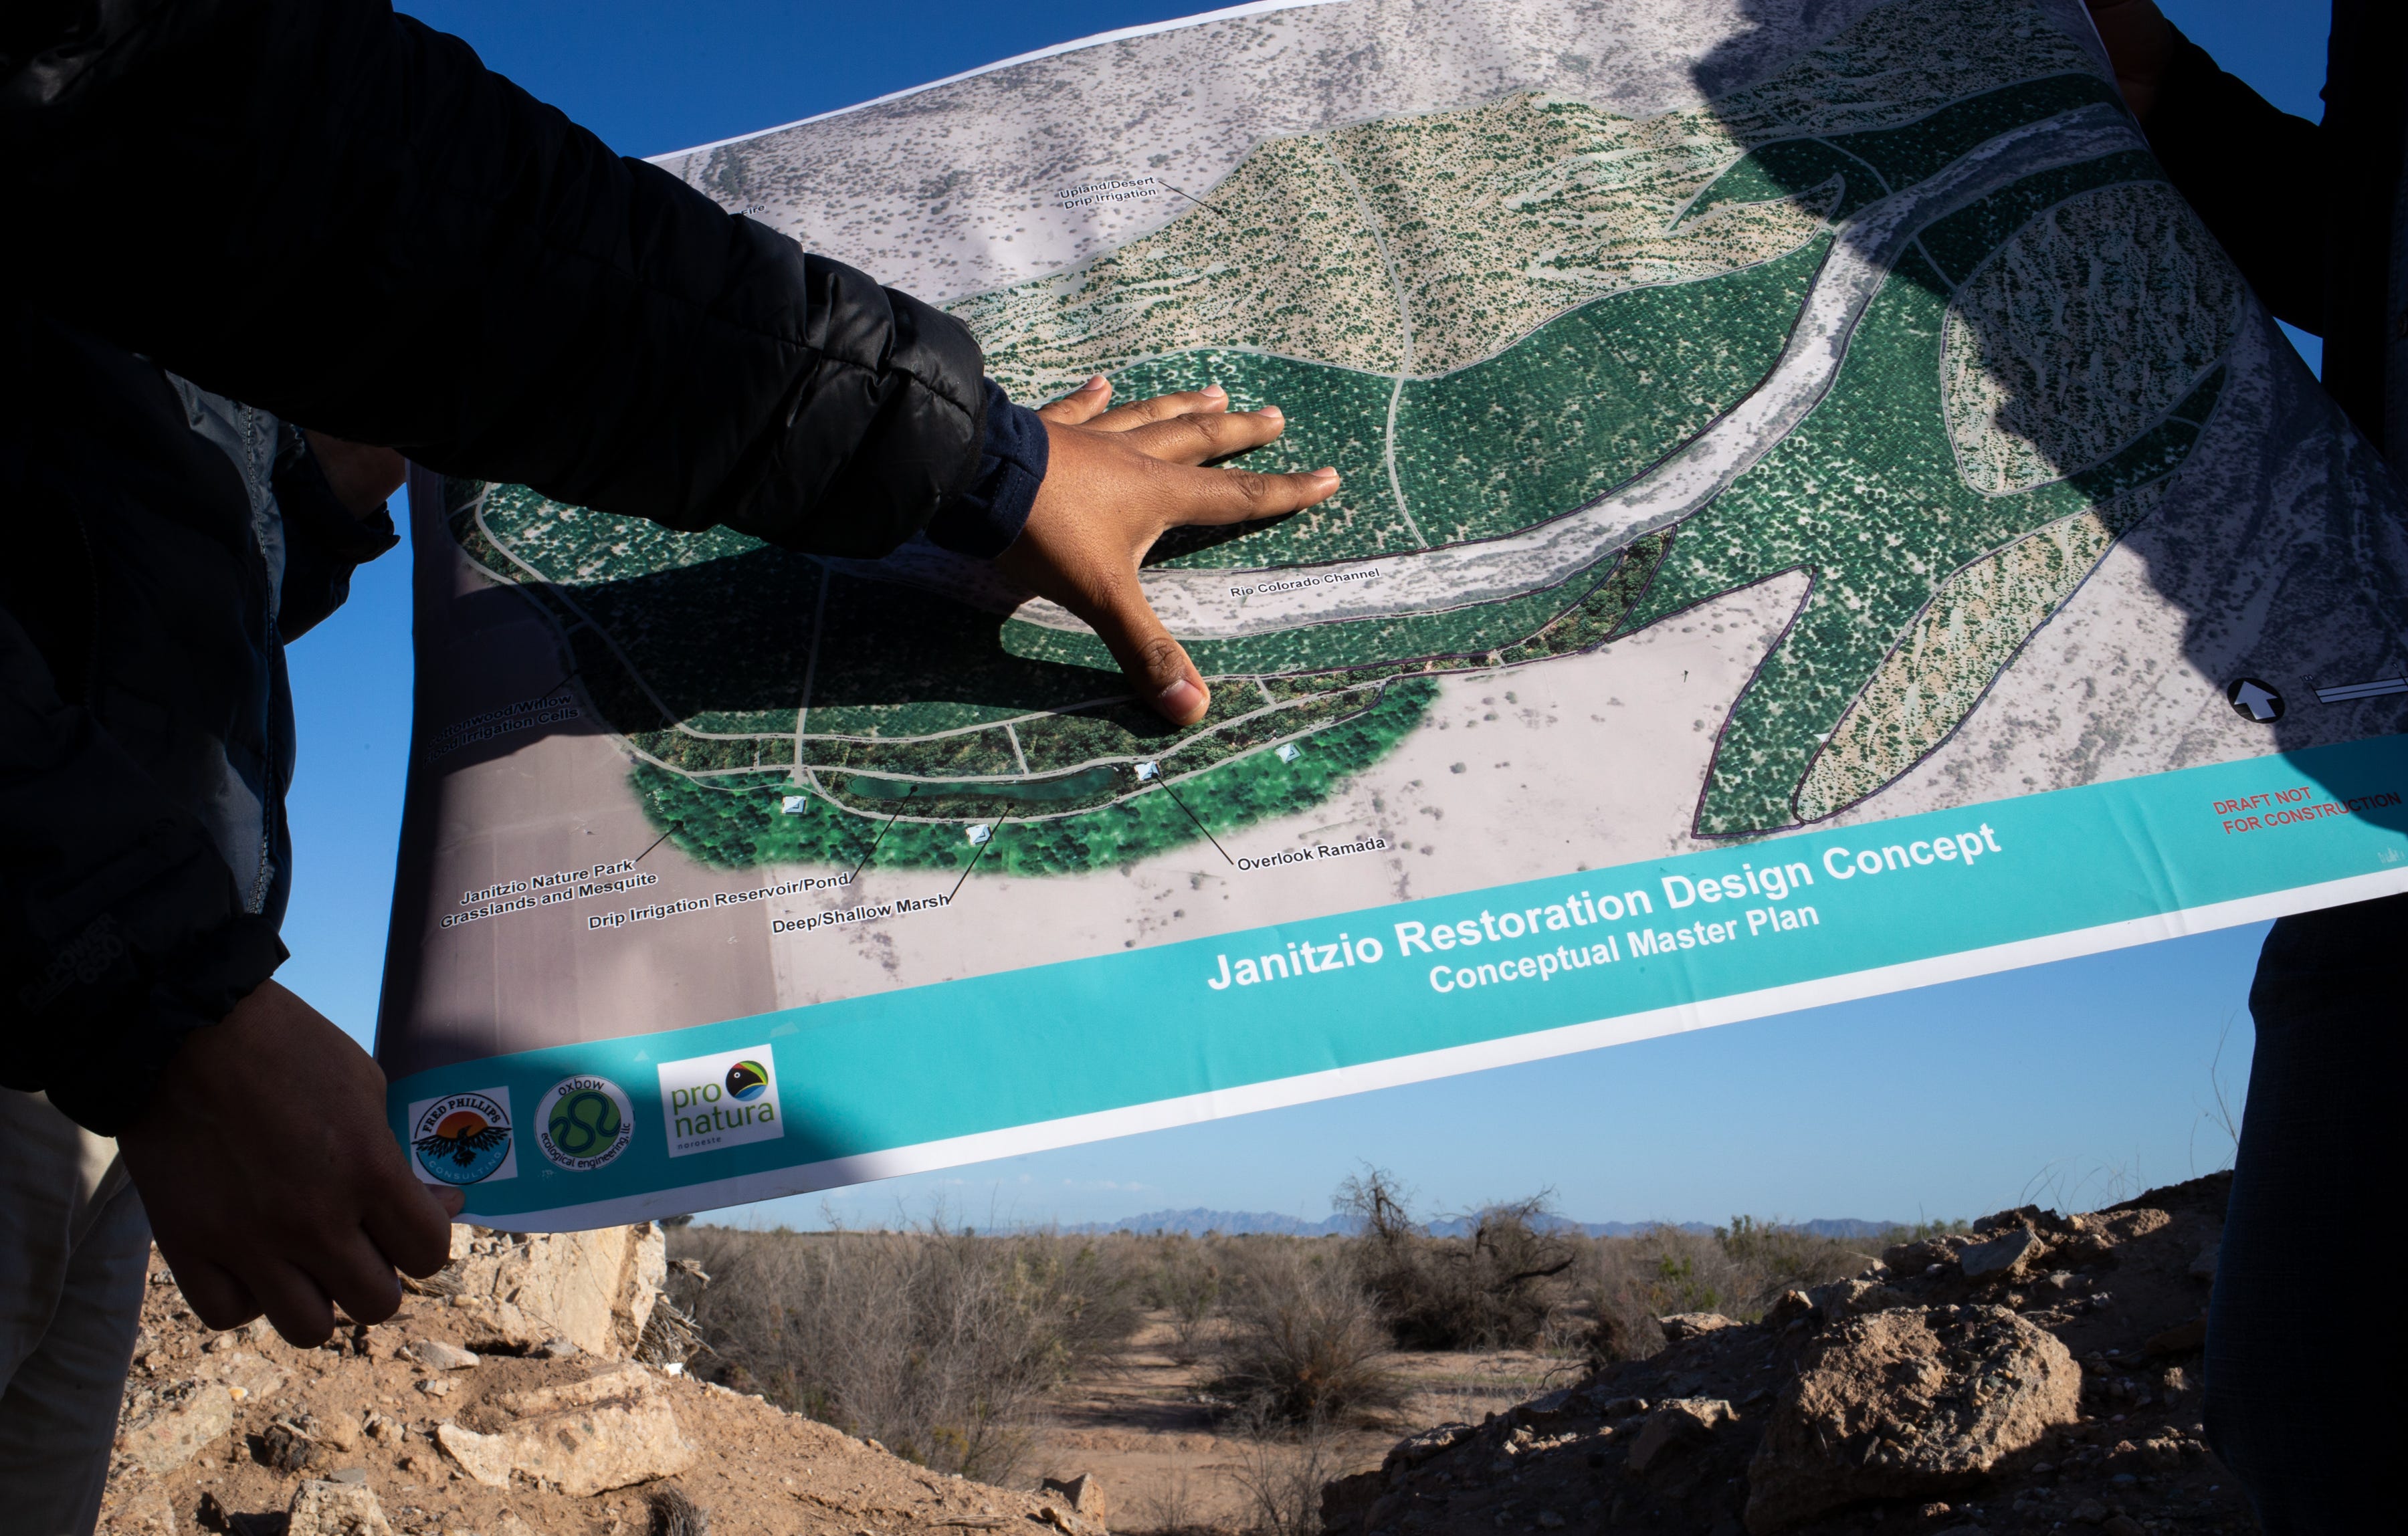 Alberto Ruiz of Pronatura Noroeste talks about the proposed Janitzio restoration site in Baja California, Mexico.